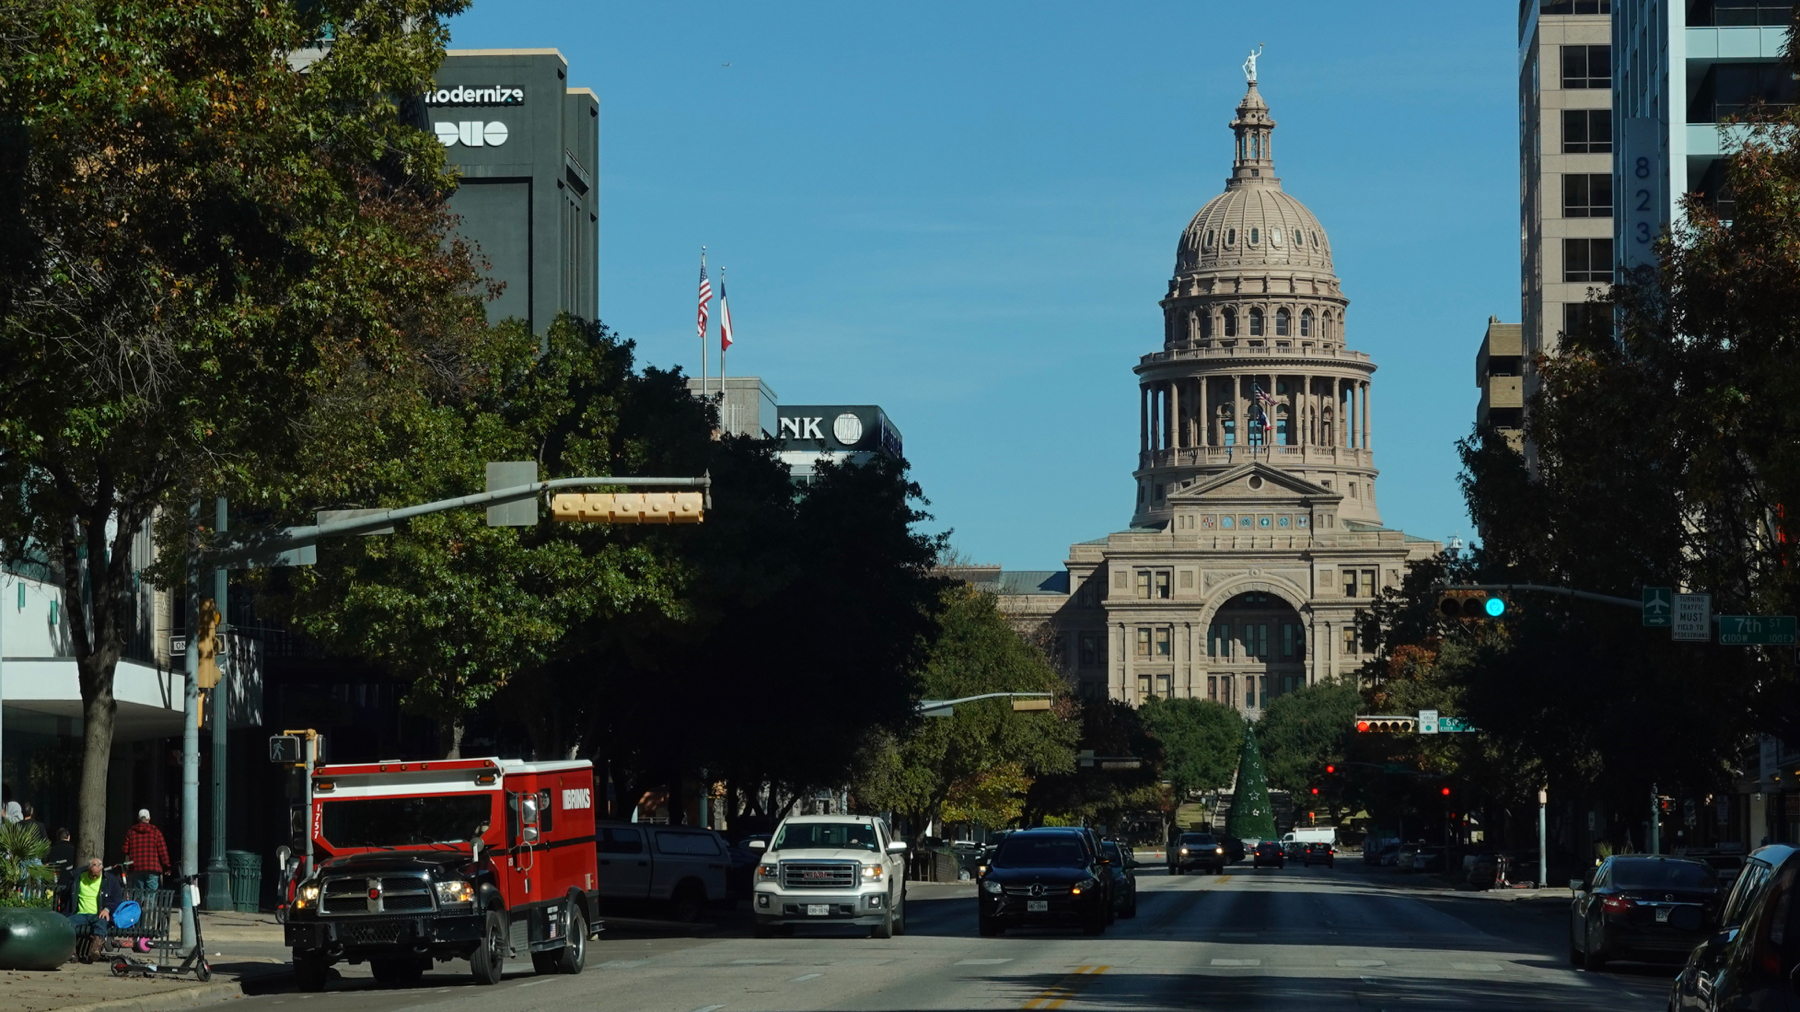 Texas capital